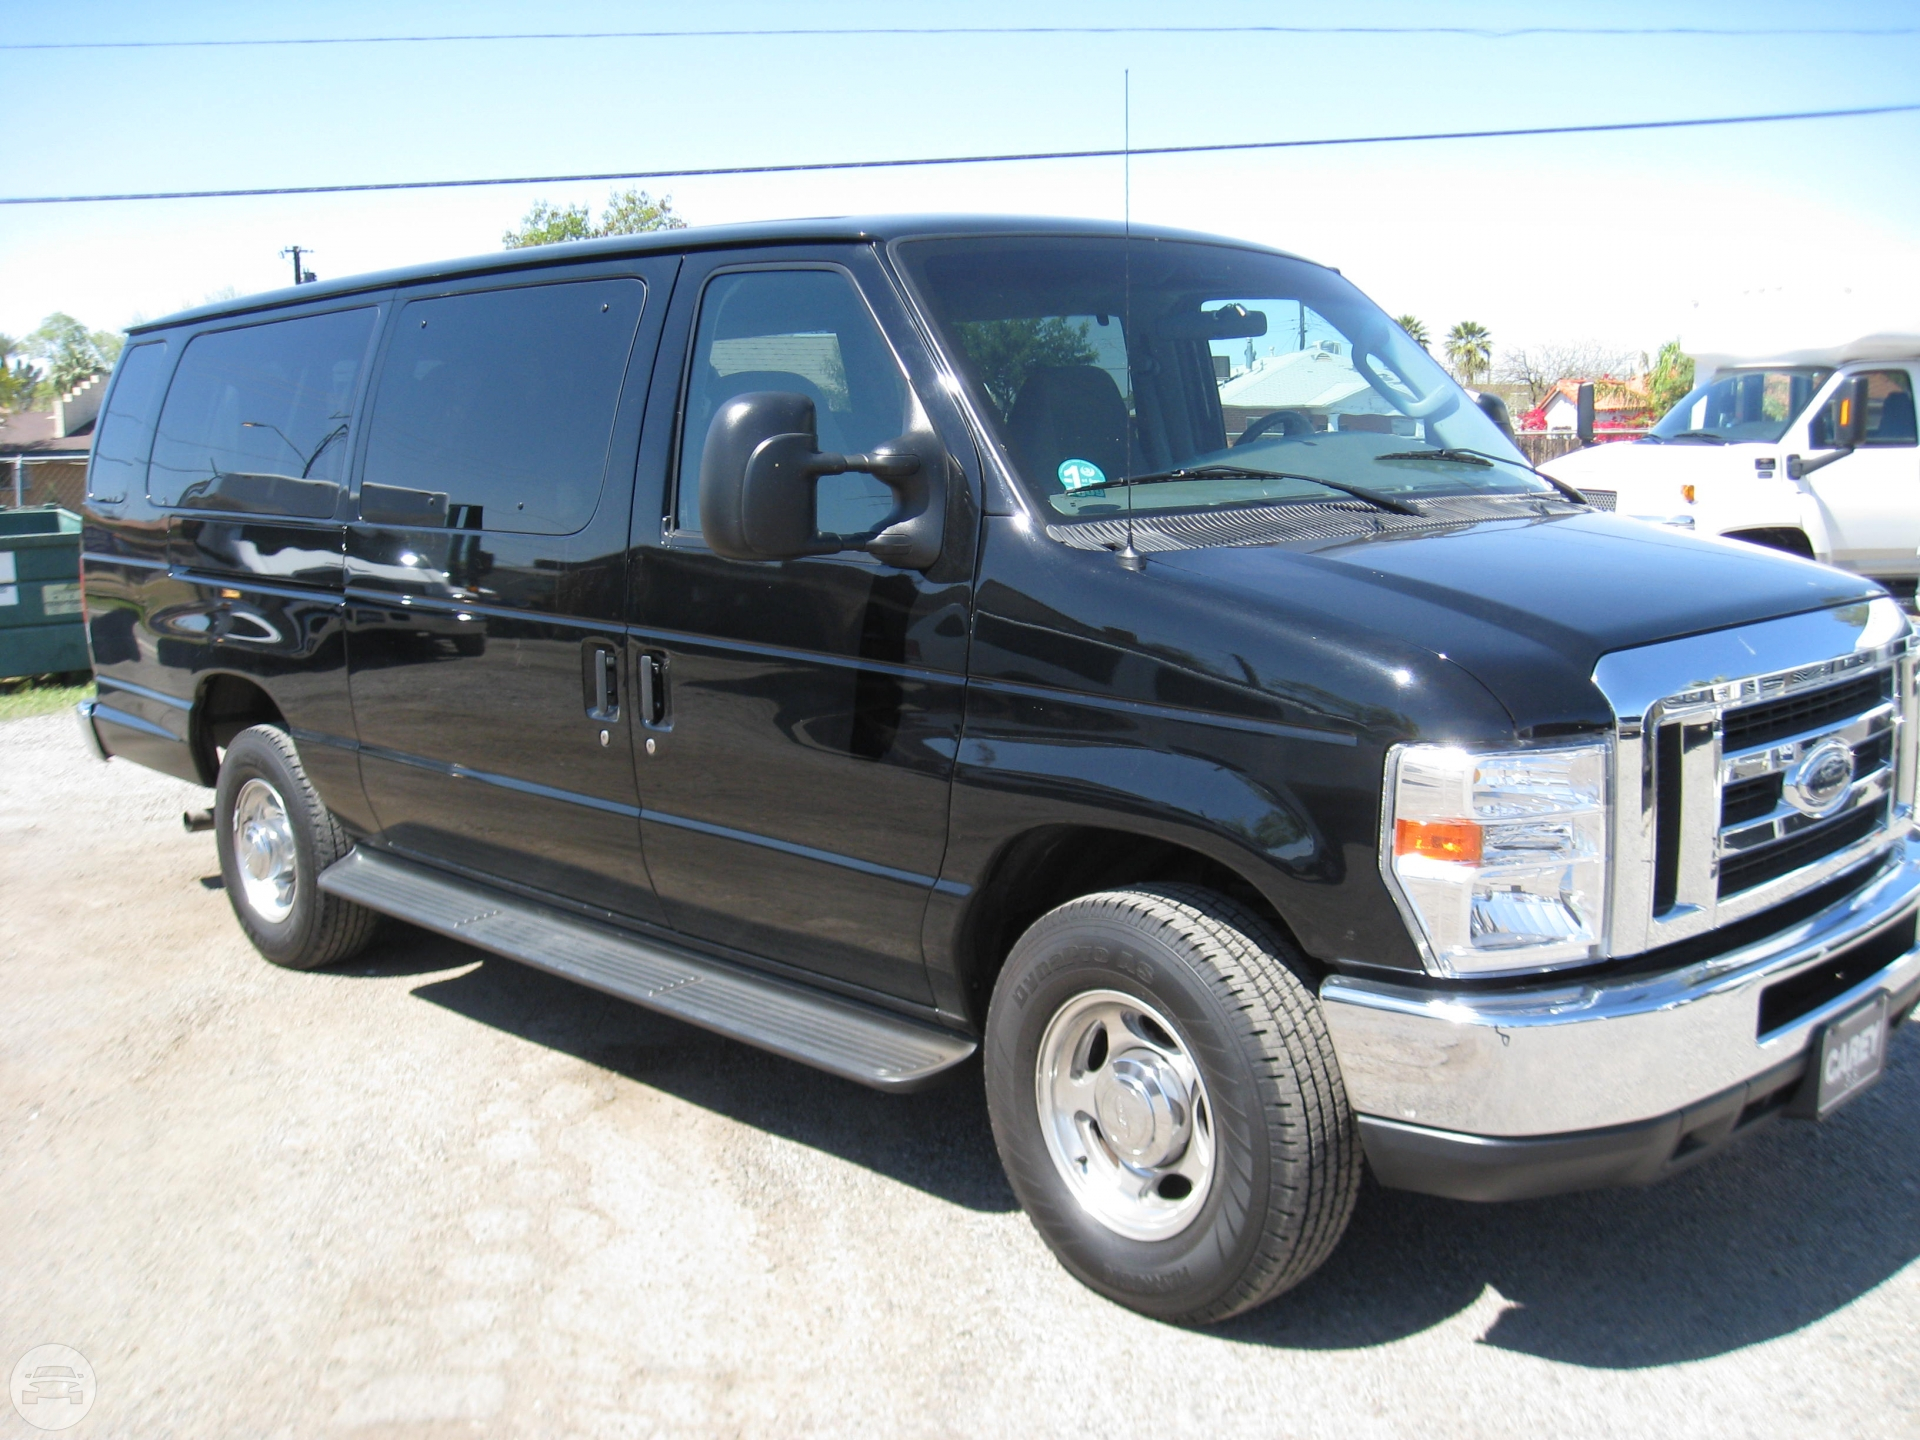 Ford Executive Van
Van /
Phoenix, AZ

 / Hourly $0.00
